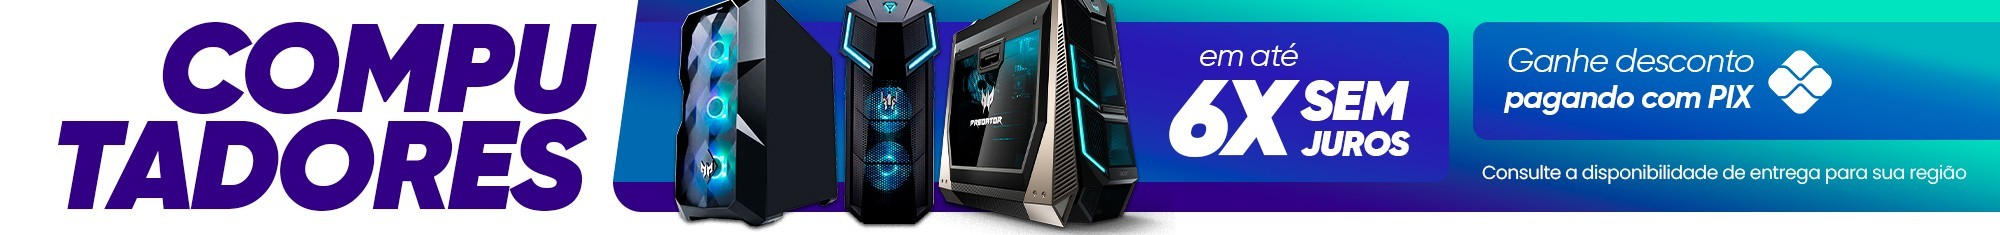 Computador: Desktop, Gamer e All in One em oferta